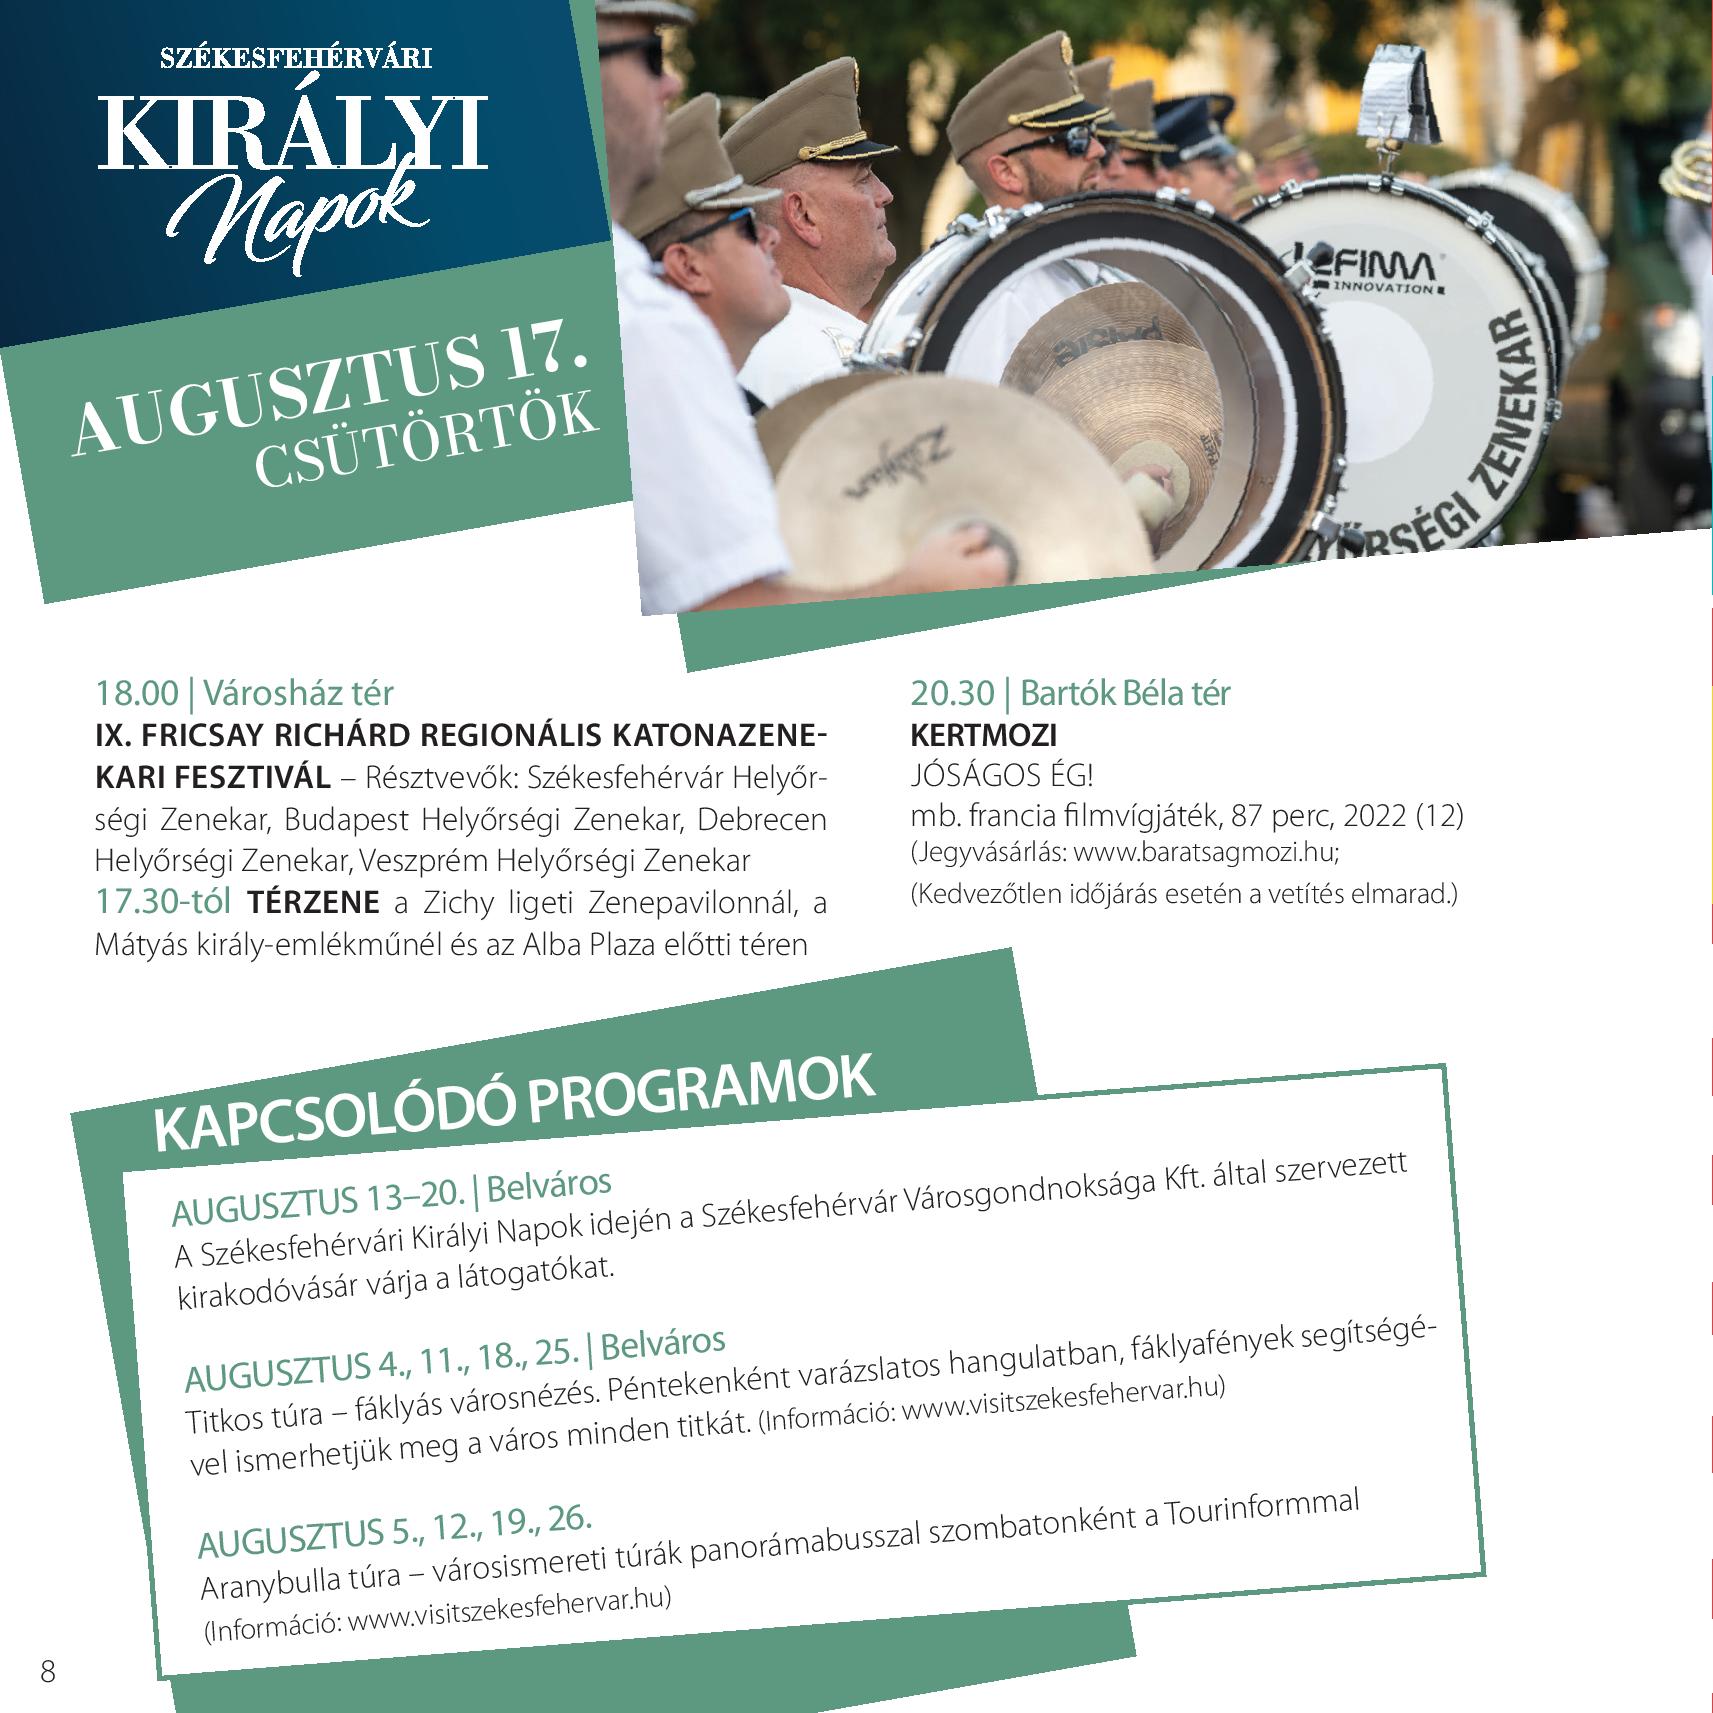 Katonazenekari Fesztivál és kertmozi – a Székesfehérvári Királyi Napok augusztus 17-i programjai